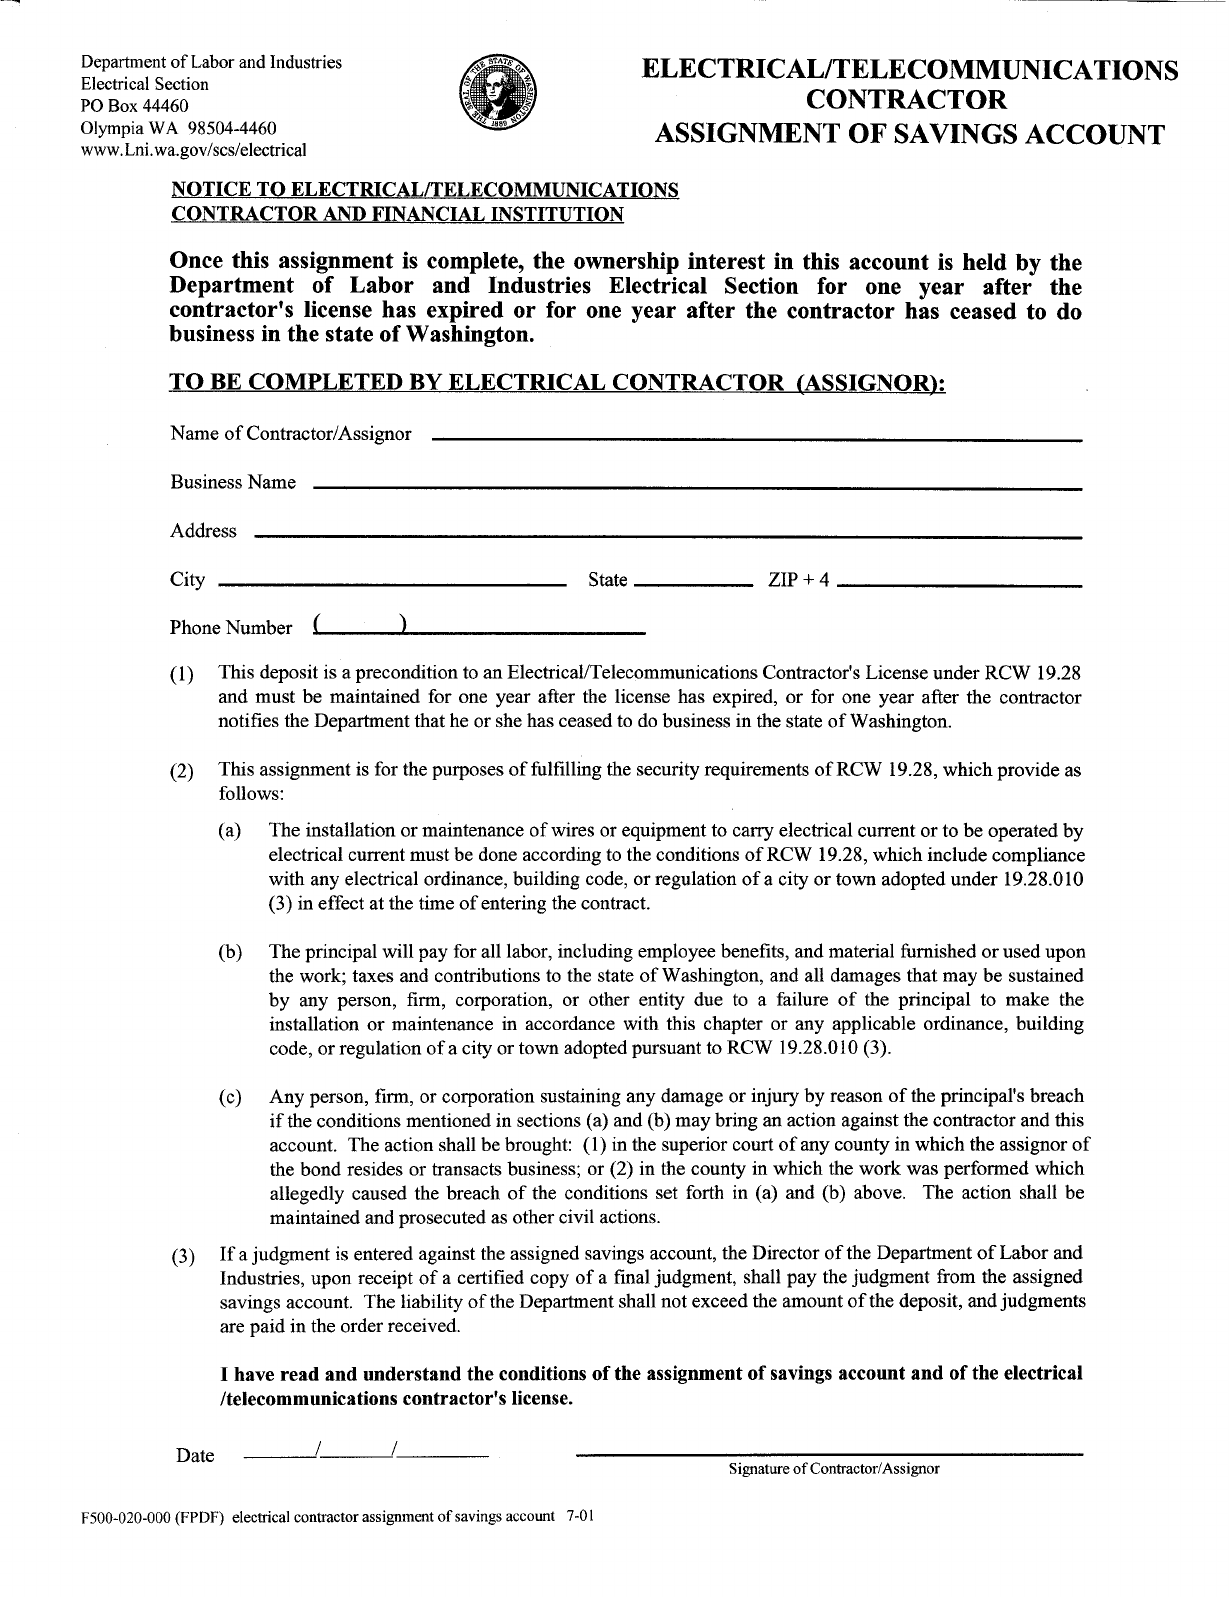 Form 500-020-000 - Edit, Fill, Sign Online | Handypdf